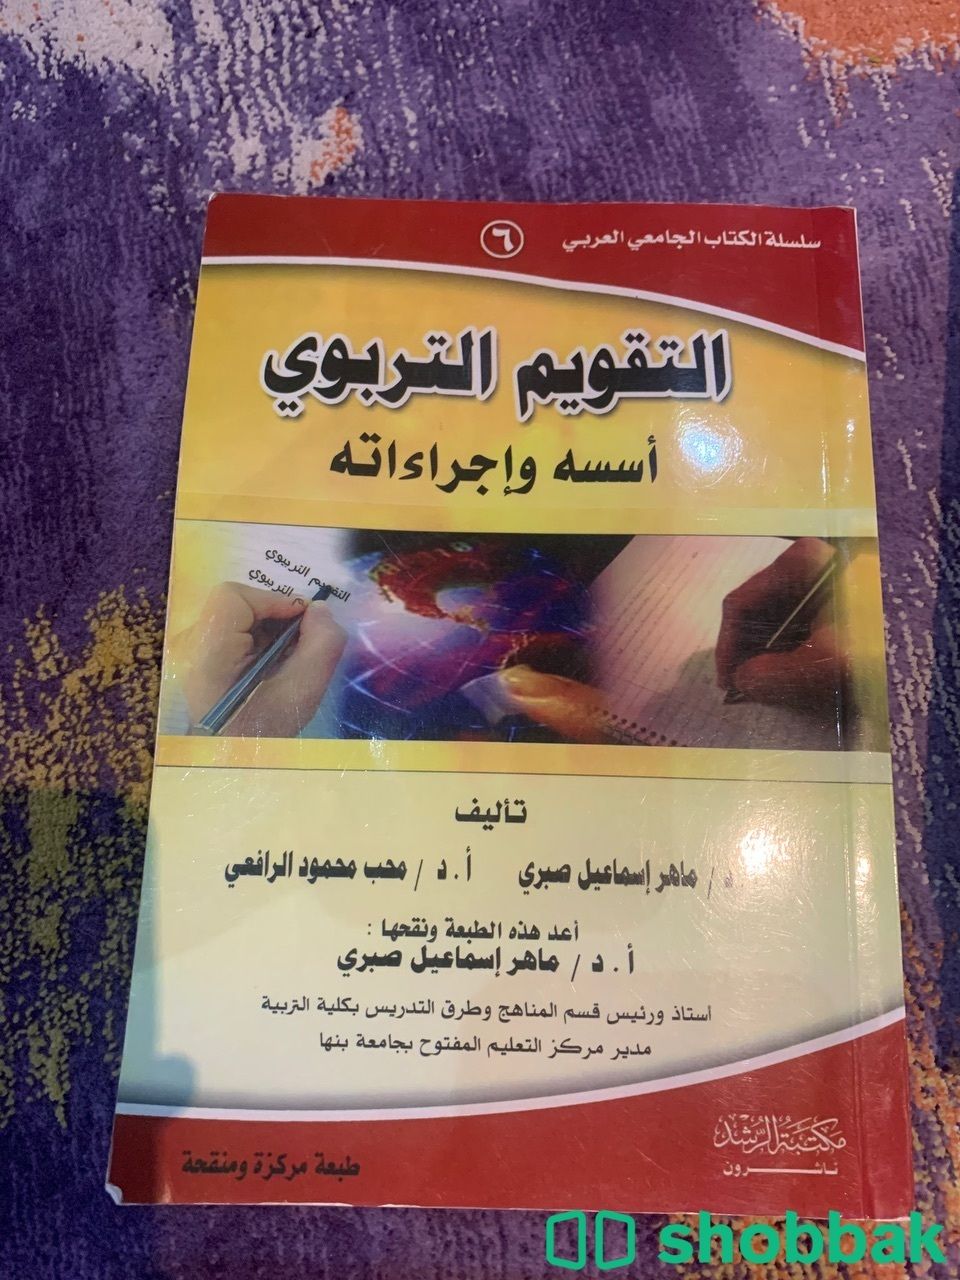 بيع كتب مستعملة Shobbak Saudi Arabia